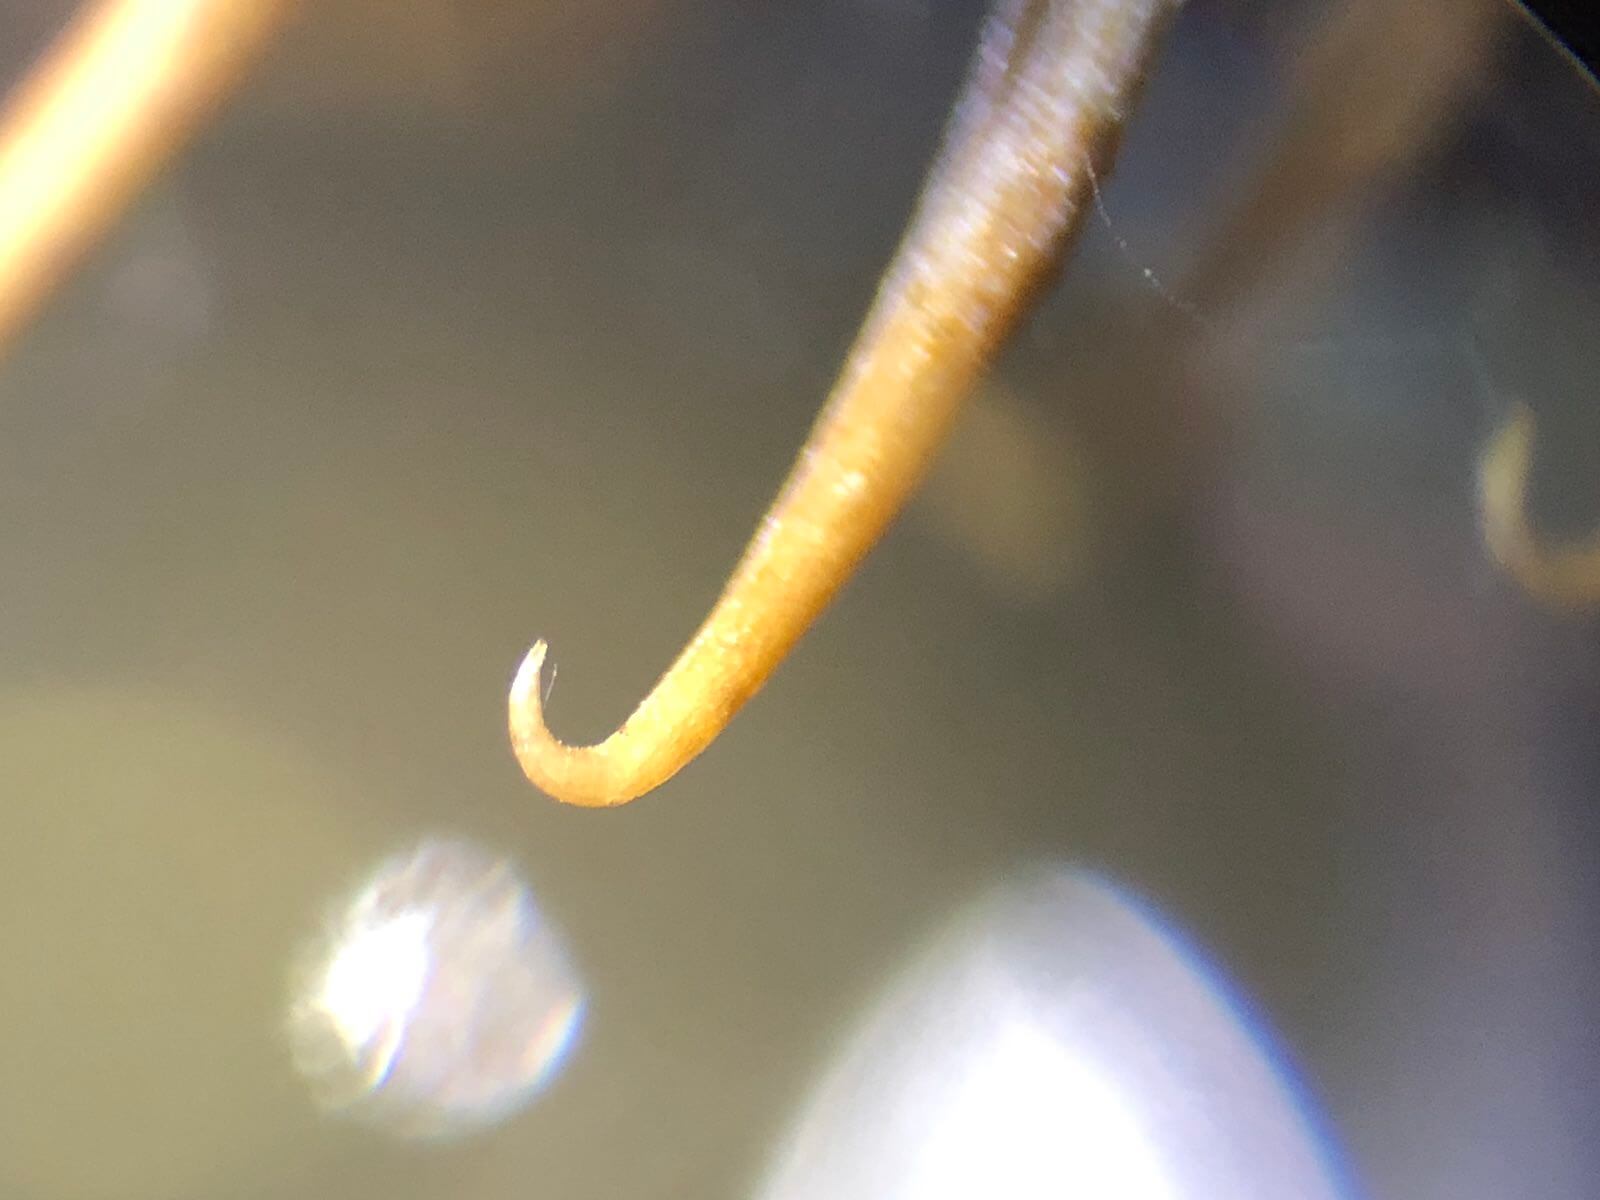 オナモミ（俗称、ひっつき虫）がくっつく仕組み〜顕微鏡写真で解説